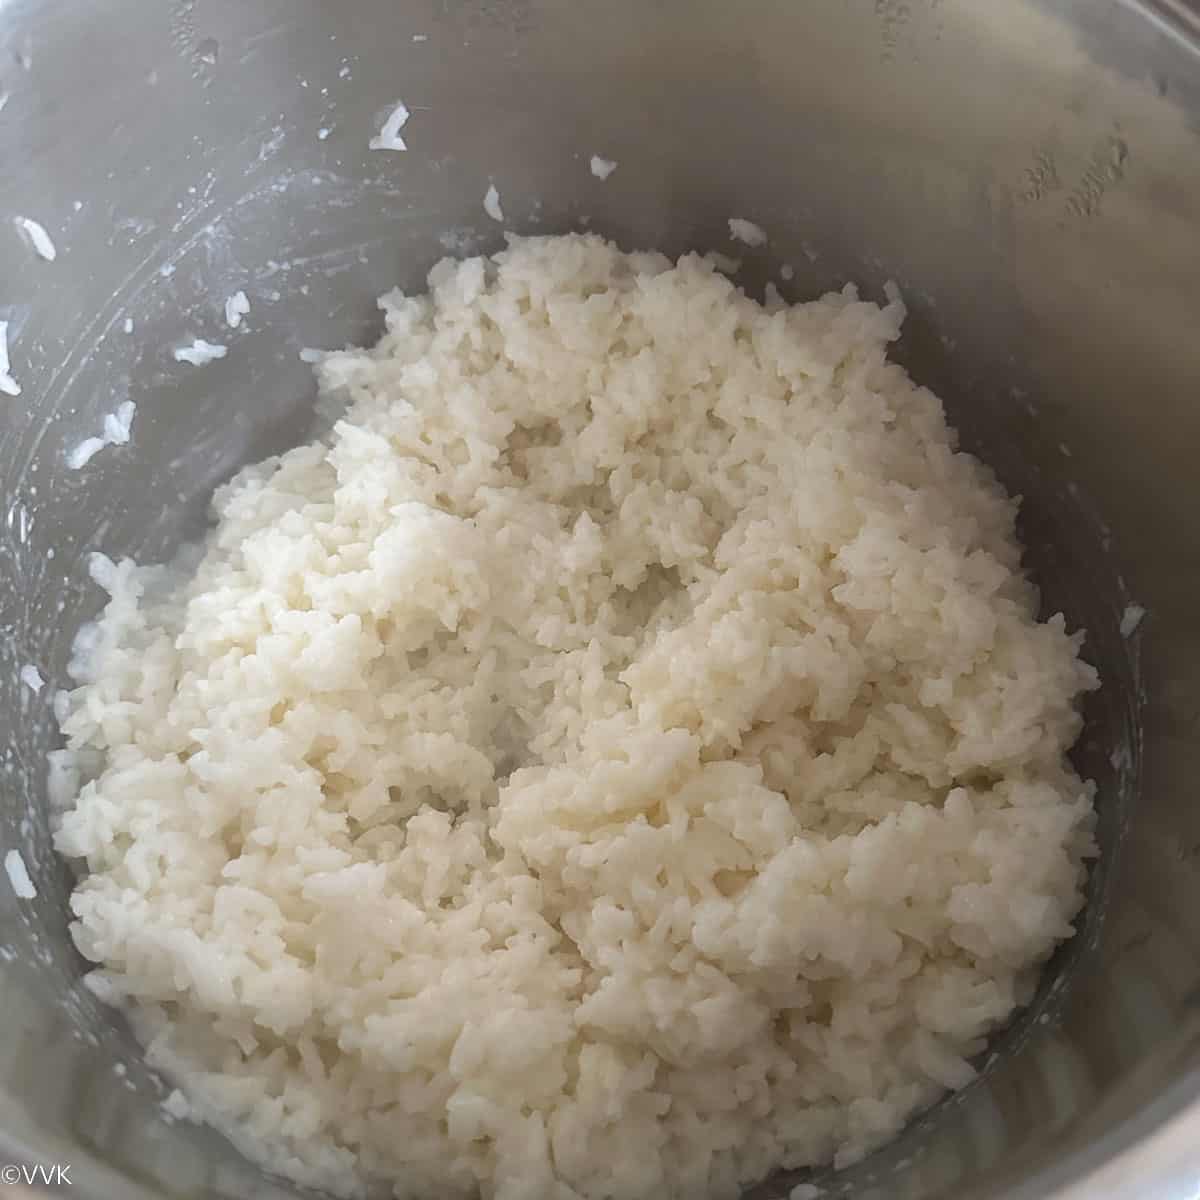 mashed rice